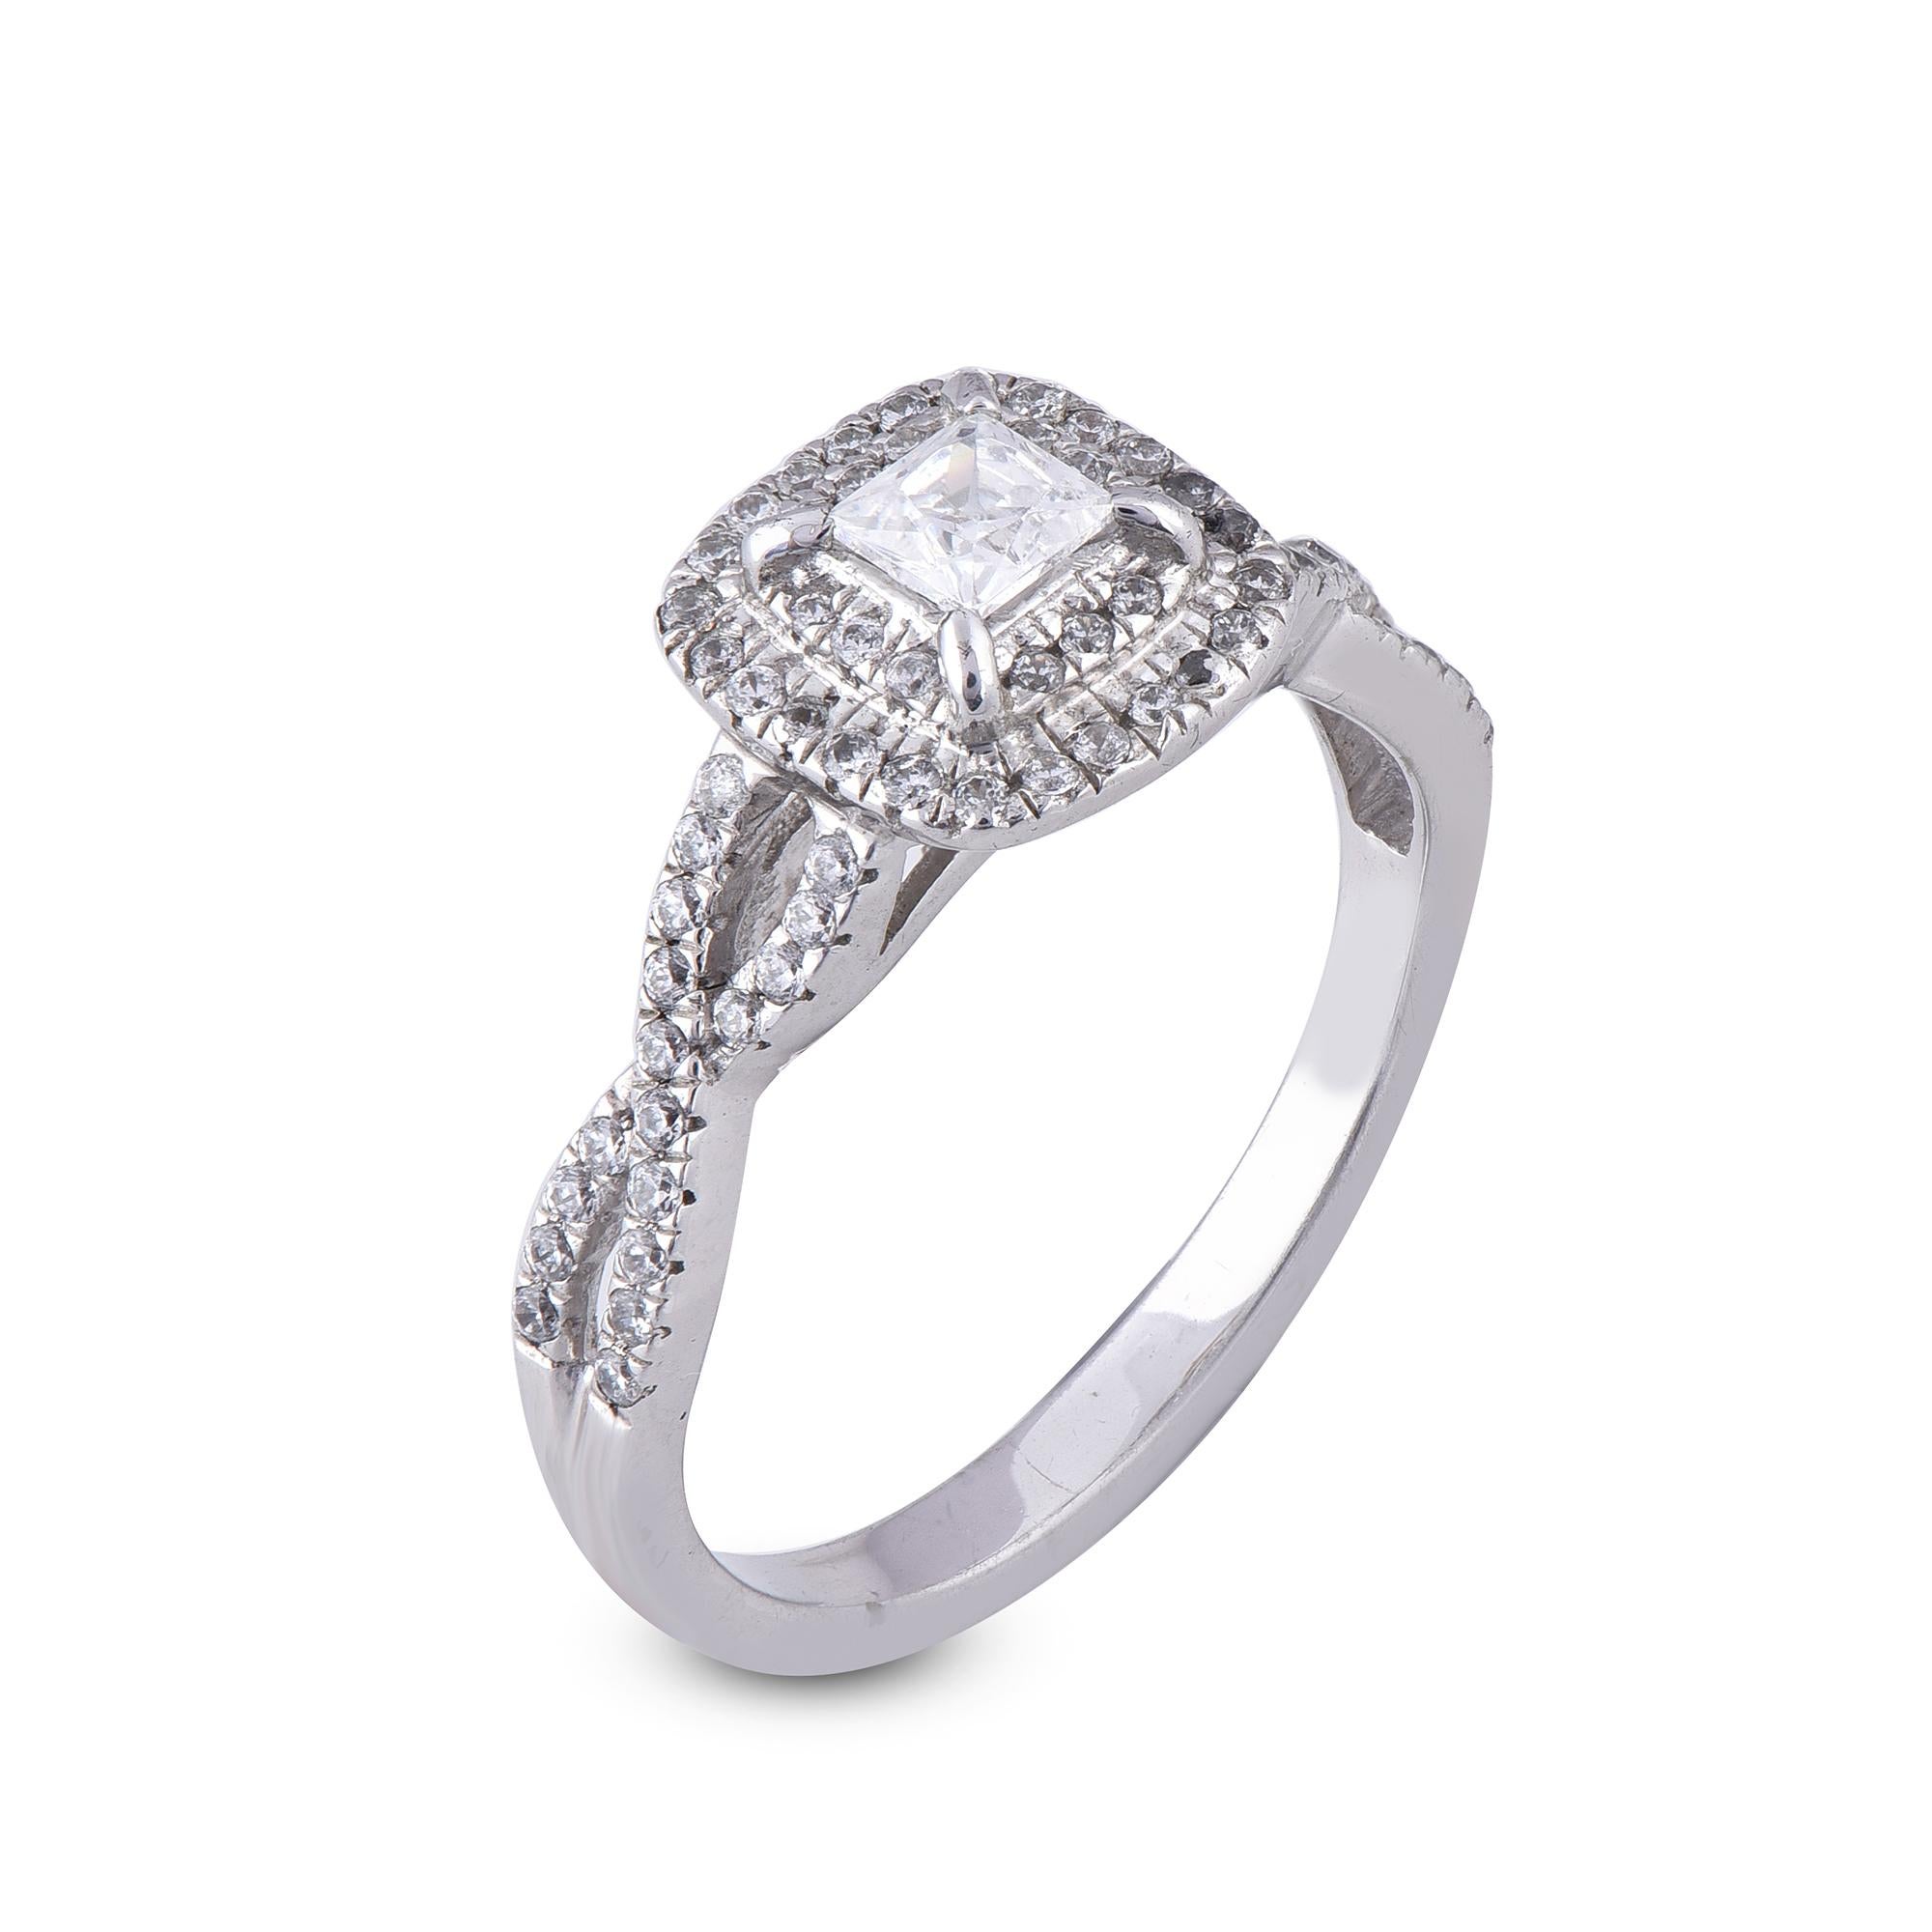 Dieser mit Diamanten besetzte Ring mit gedrehter Schiene wurde mit Blick auf die Romantik entworfen und erhöht den Glanzfaktor. Der Ring ist aus 18-karätigem Gold in Weiß-, Rosé- oder Gelbgold gefertigt und weist runde 72  und 1 Diamant im